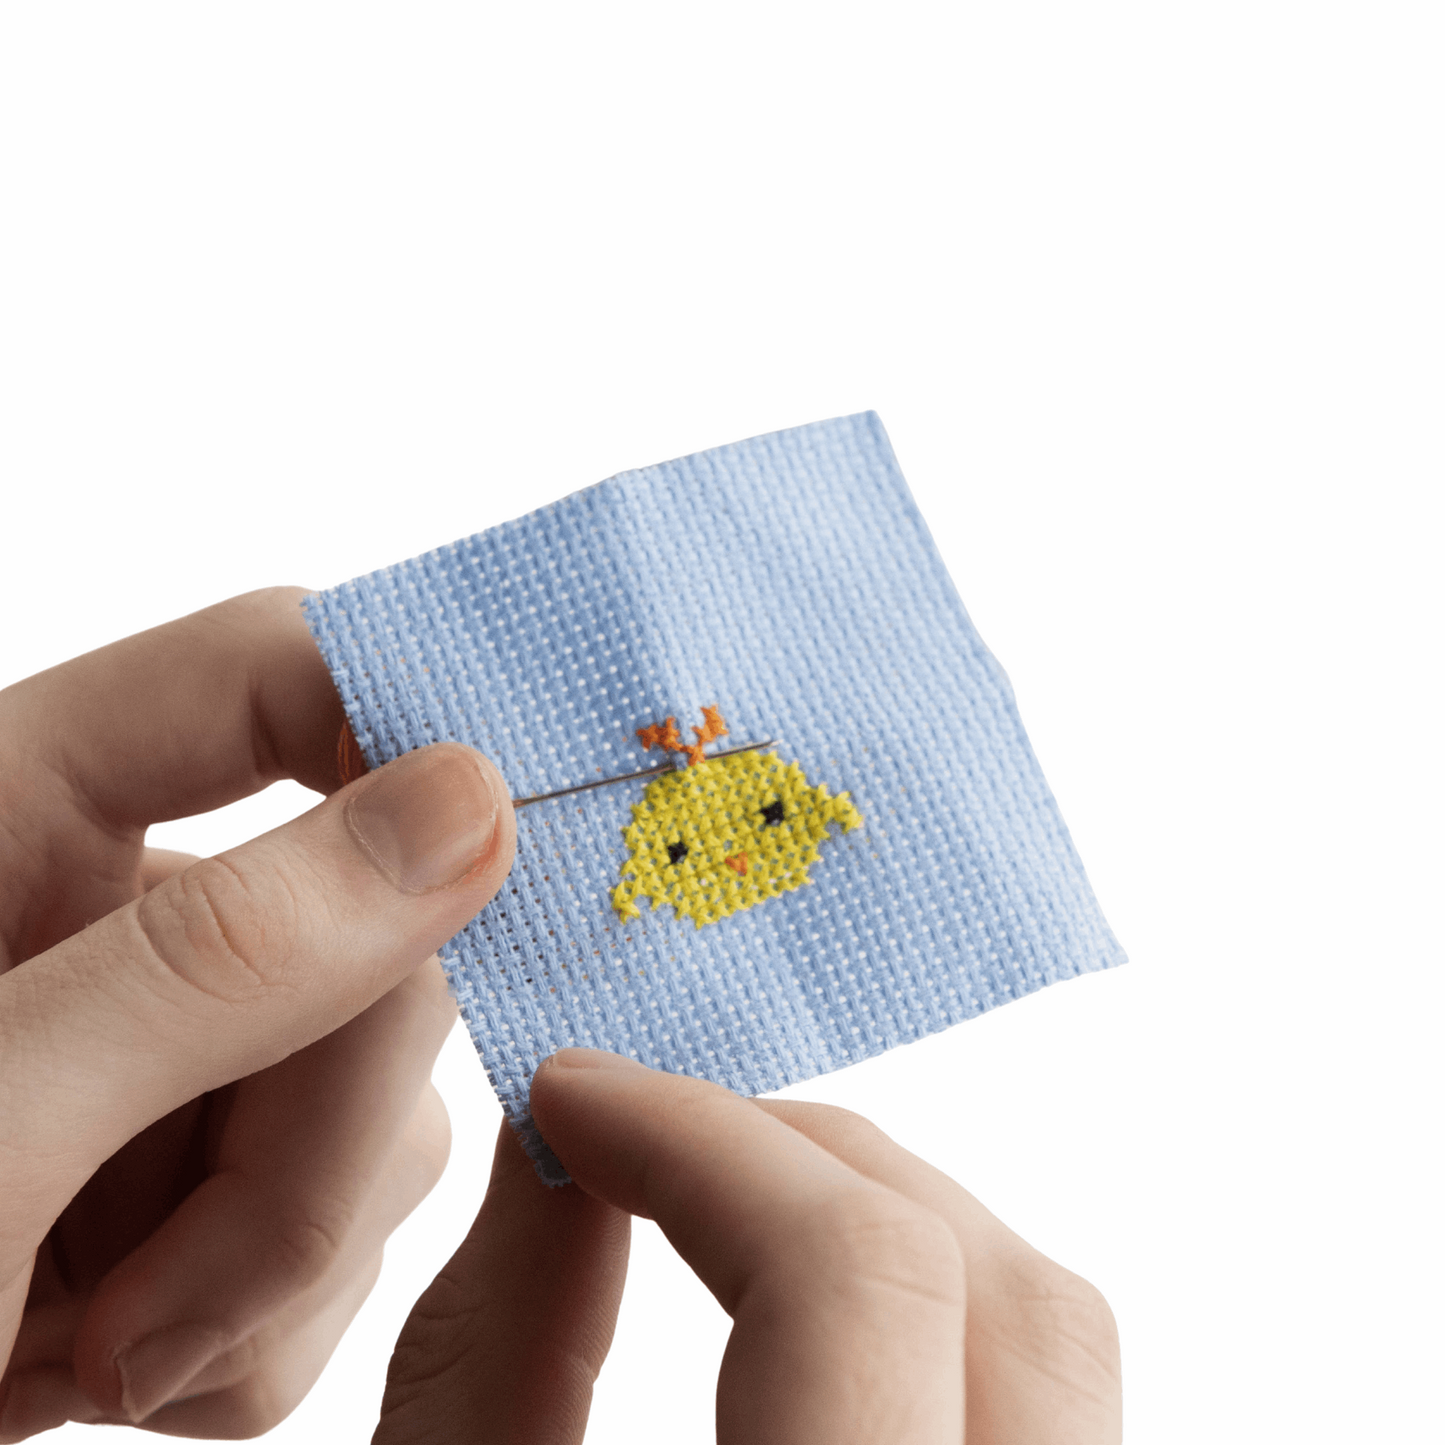 Kawaii Chick Mini Cross Stitch Kit in A Matchbox